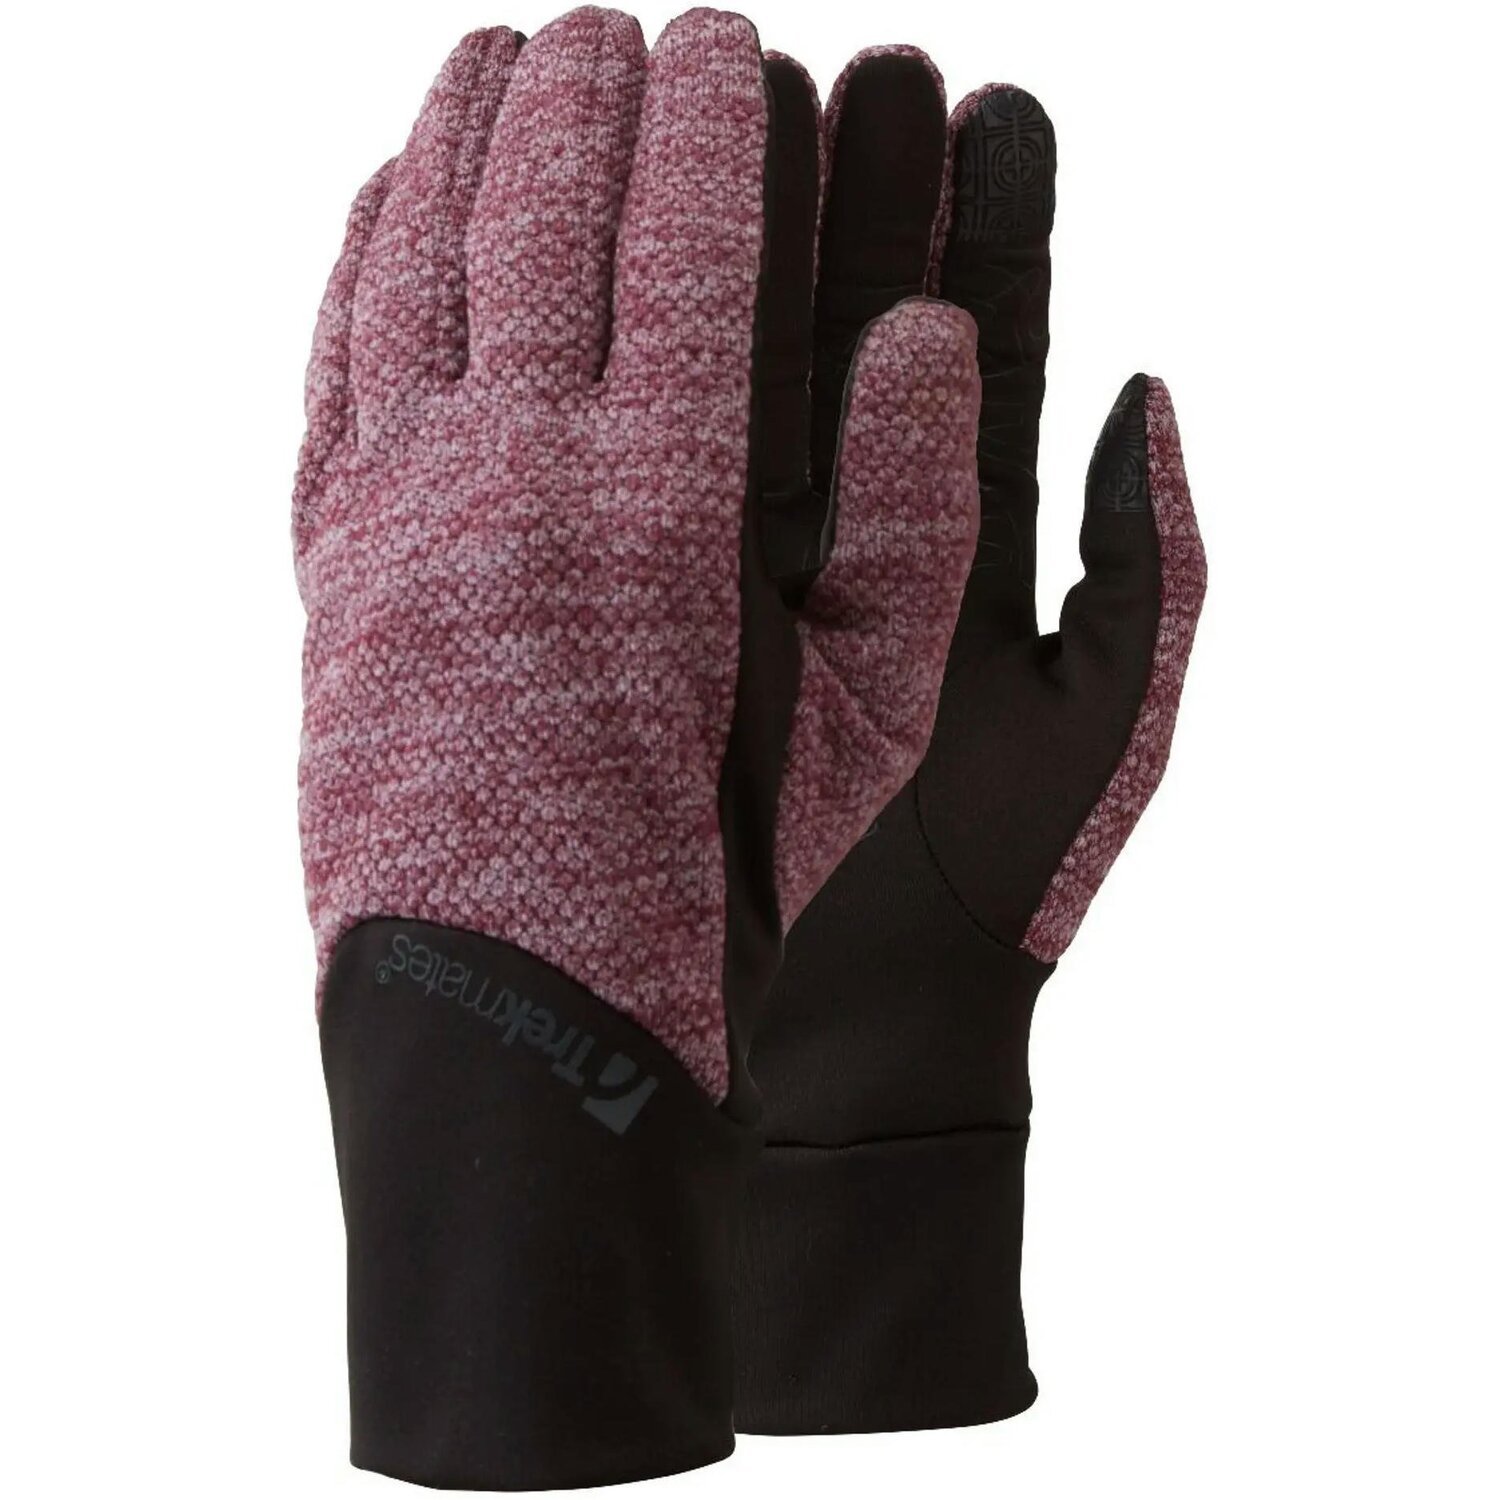 Перчатки Trekmates Harland Glove TM-006305 aubergine - M - фиолетовый/черный фото 